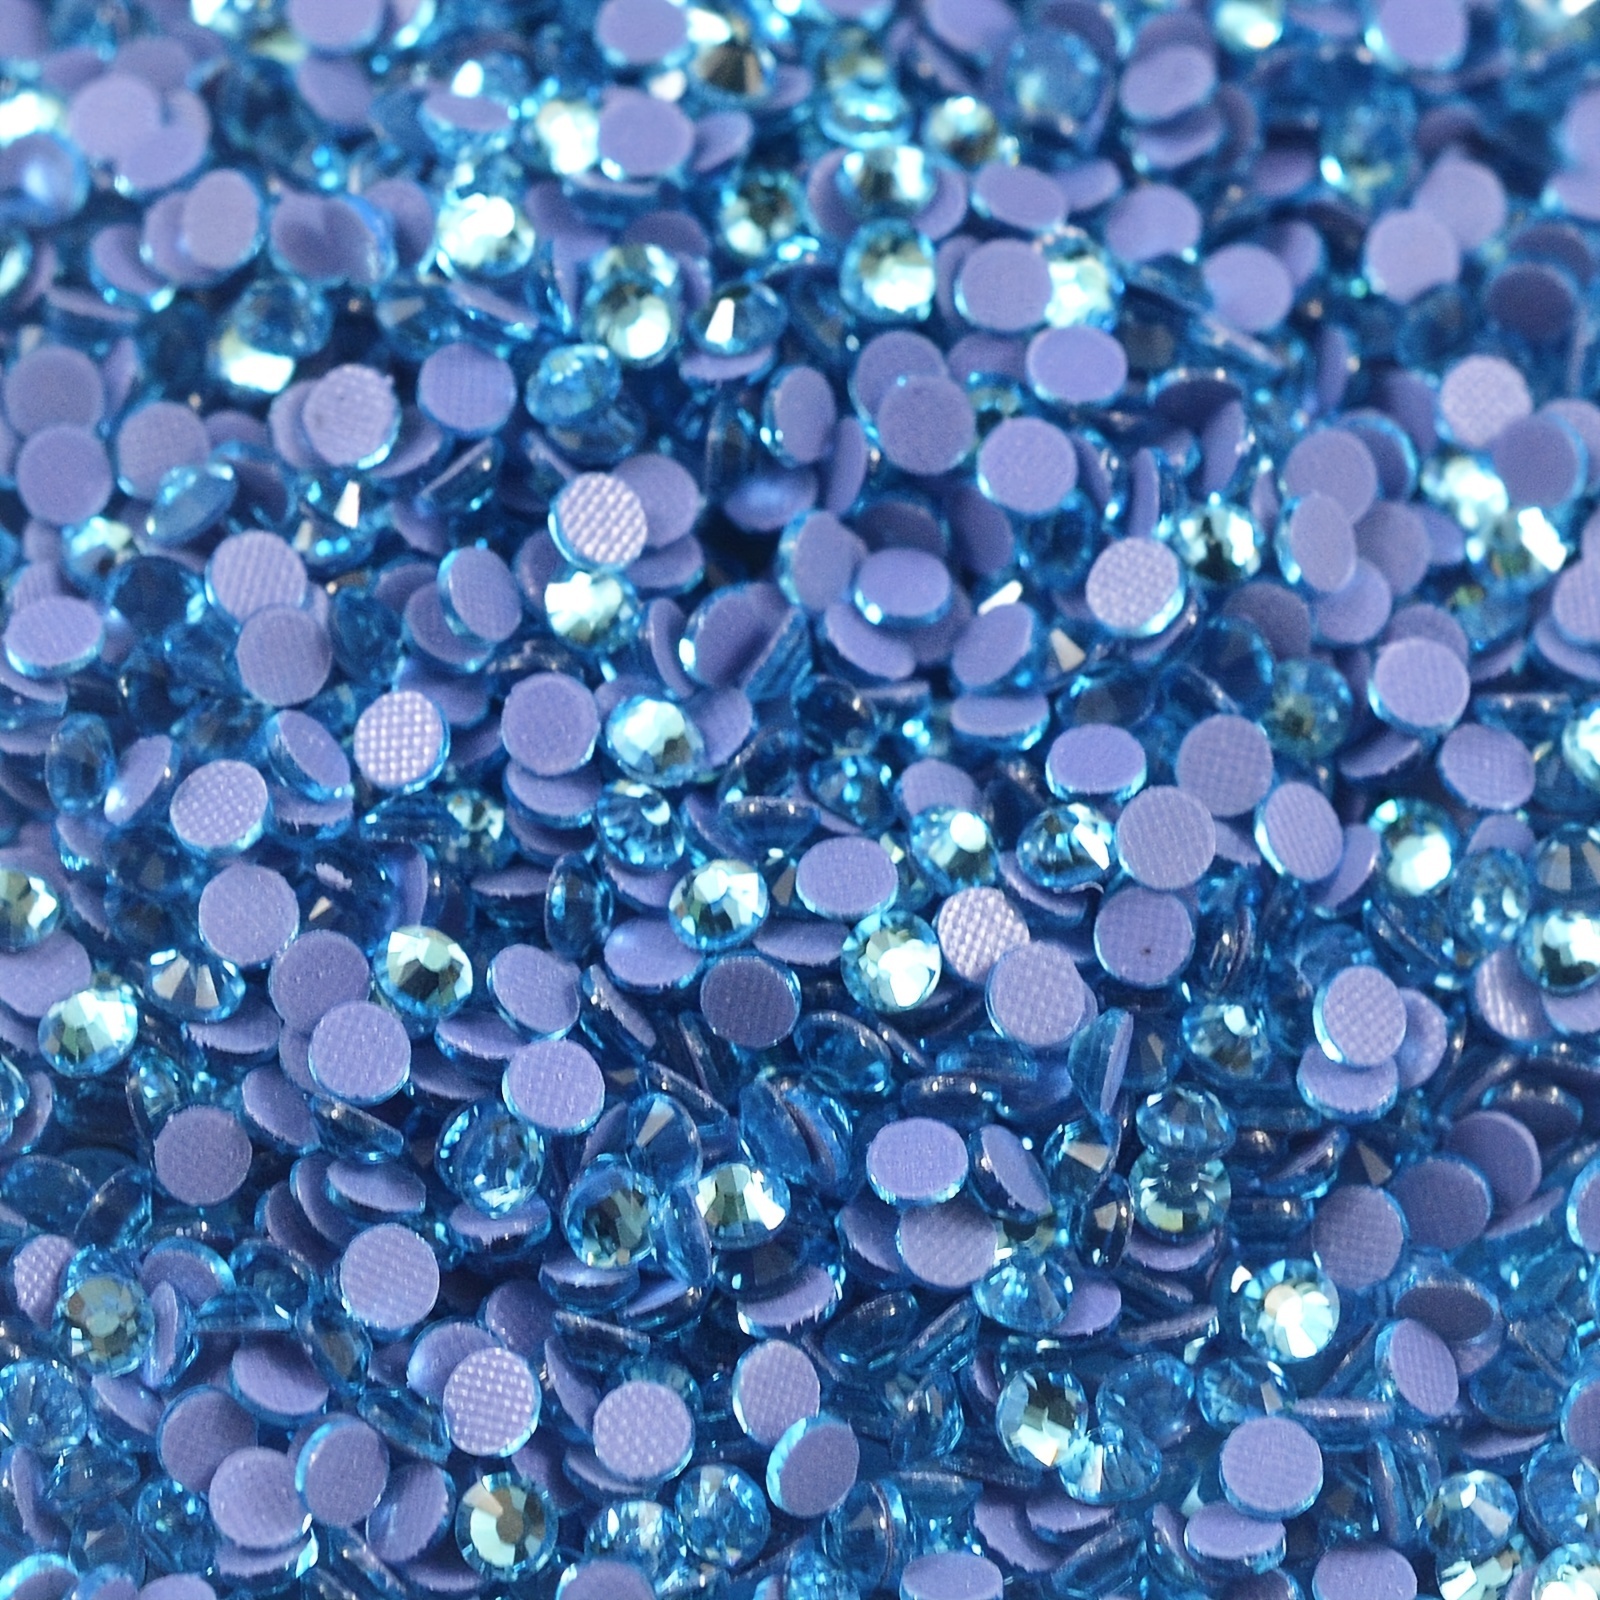 Wholesale Aquamarine Ab Color Hotfix Crystal Rhinestone for